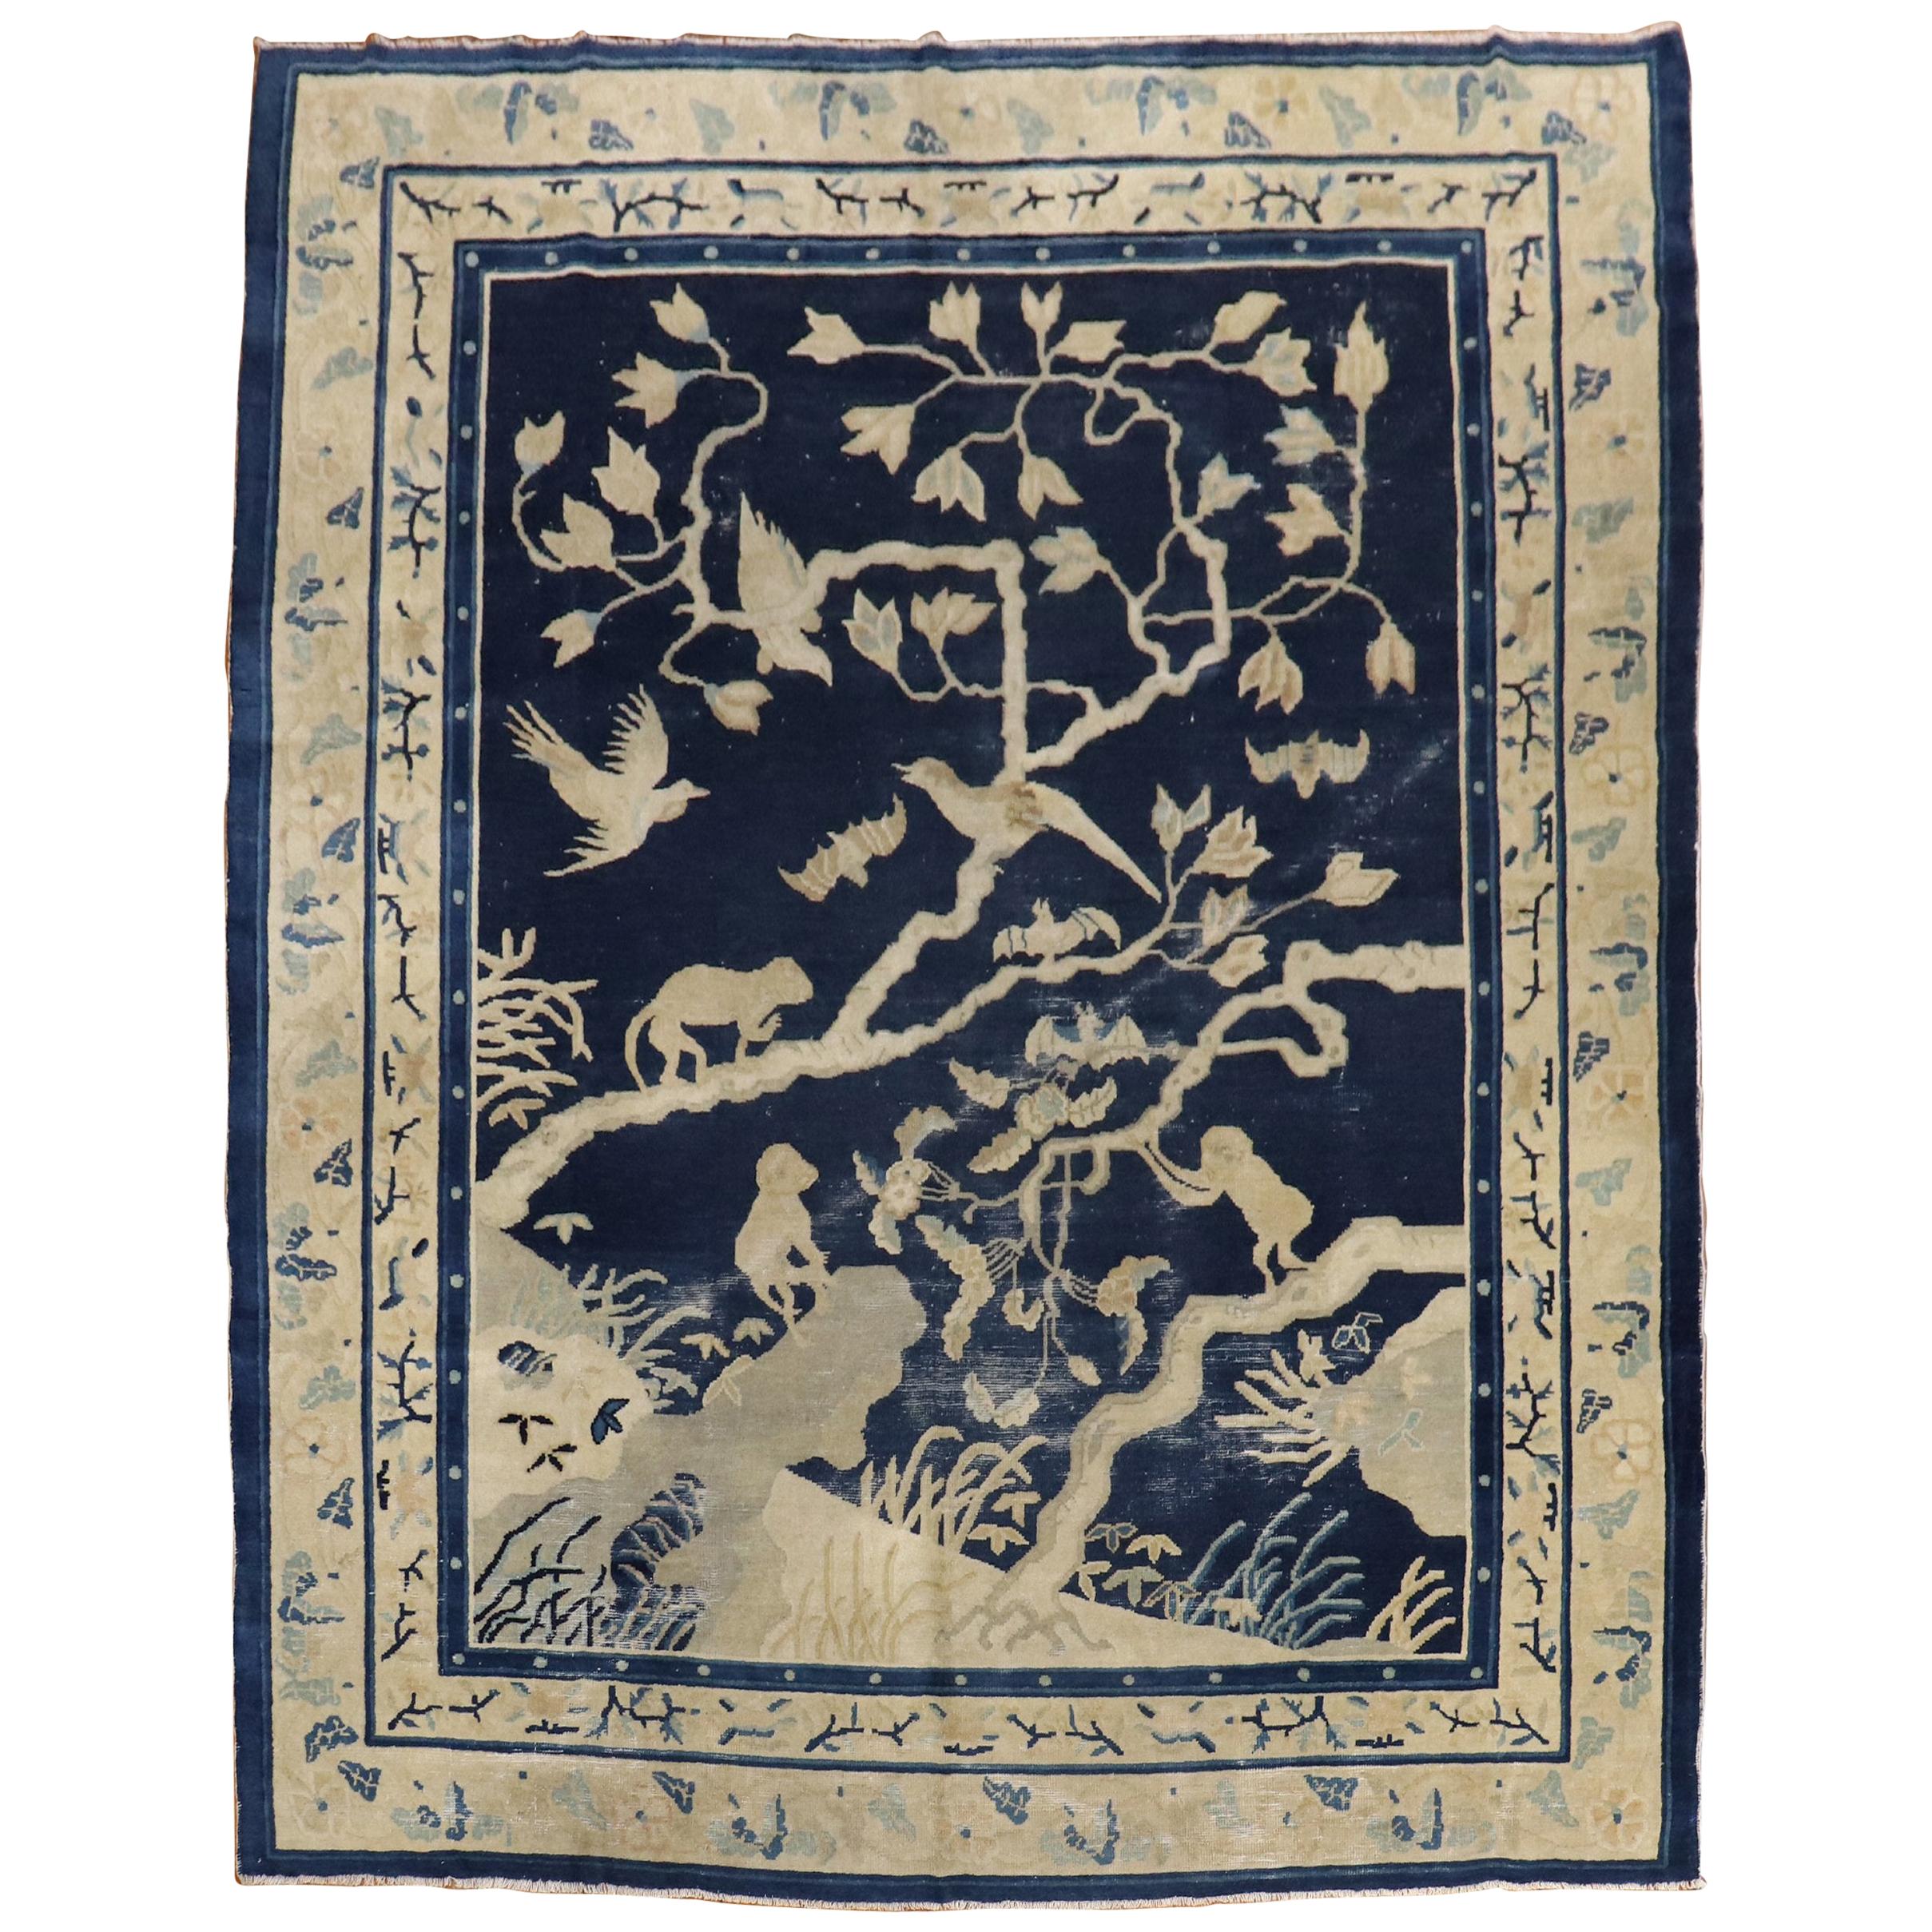 Bildhauerischer chinesischer Teppich mit Affenmotiv aus dem 19. Jahrhundert